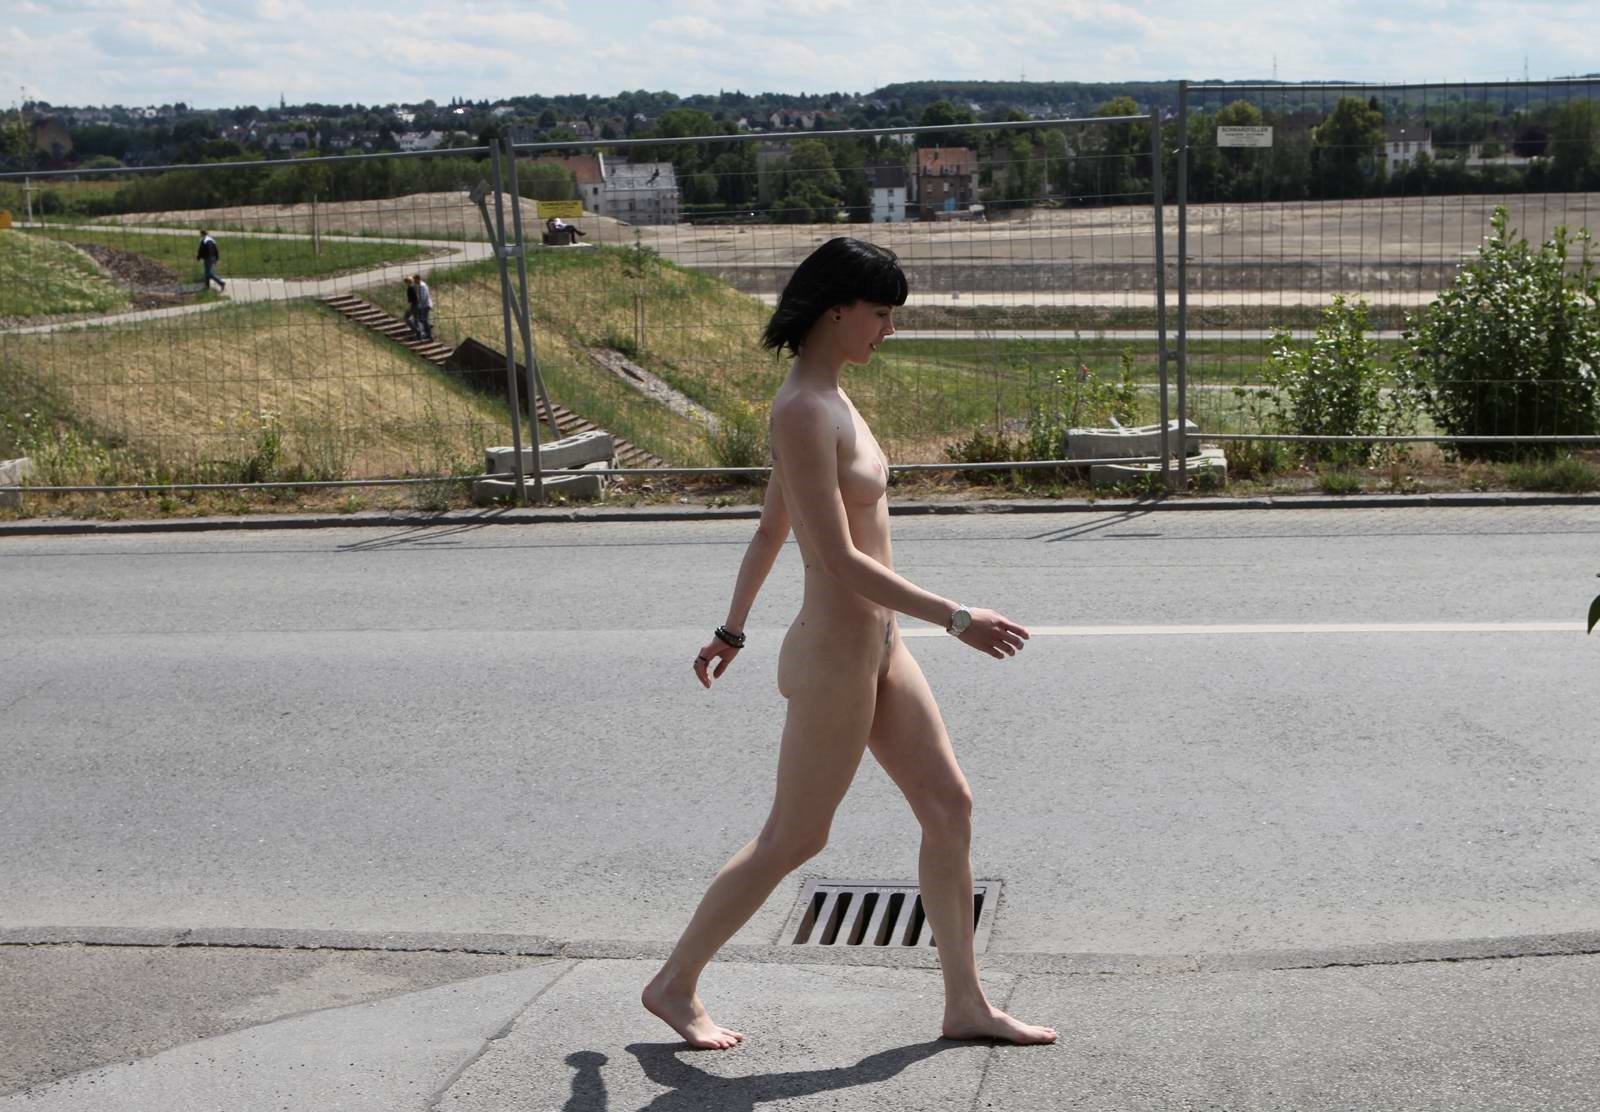 по городу гулял голый мужчина фото 74